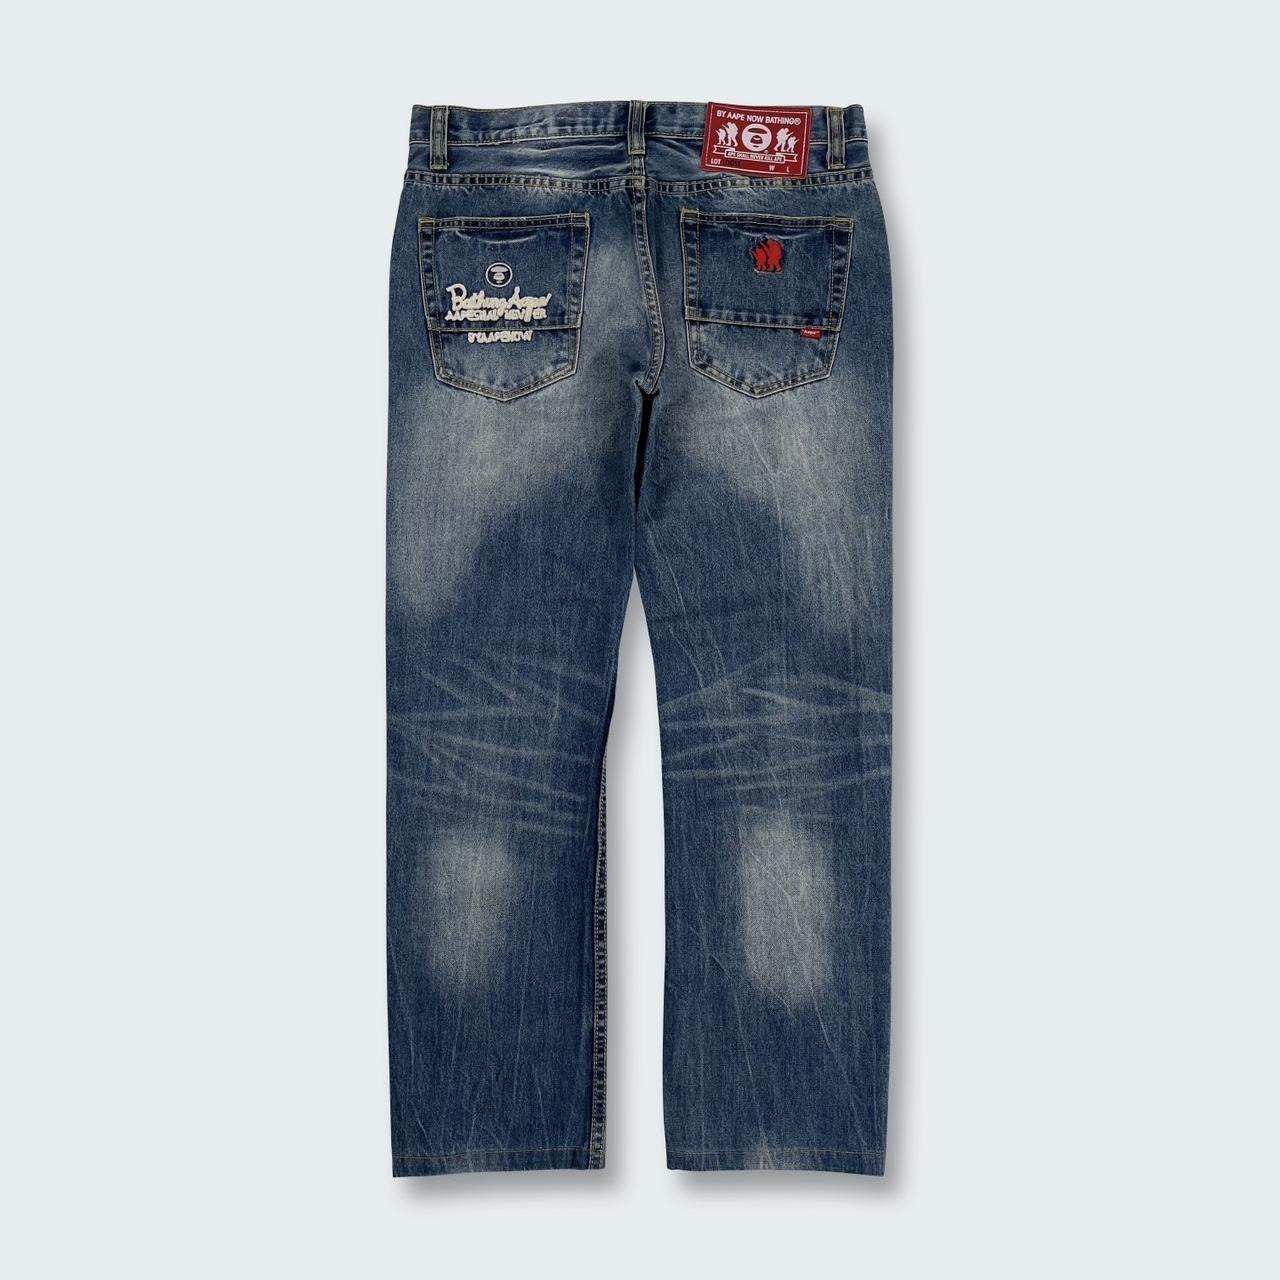 R-119 Authentic Vintage Aape Jeans Condition: •... - Depop